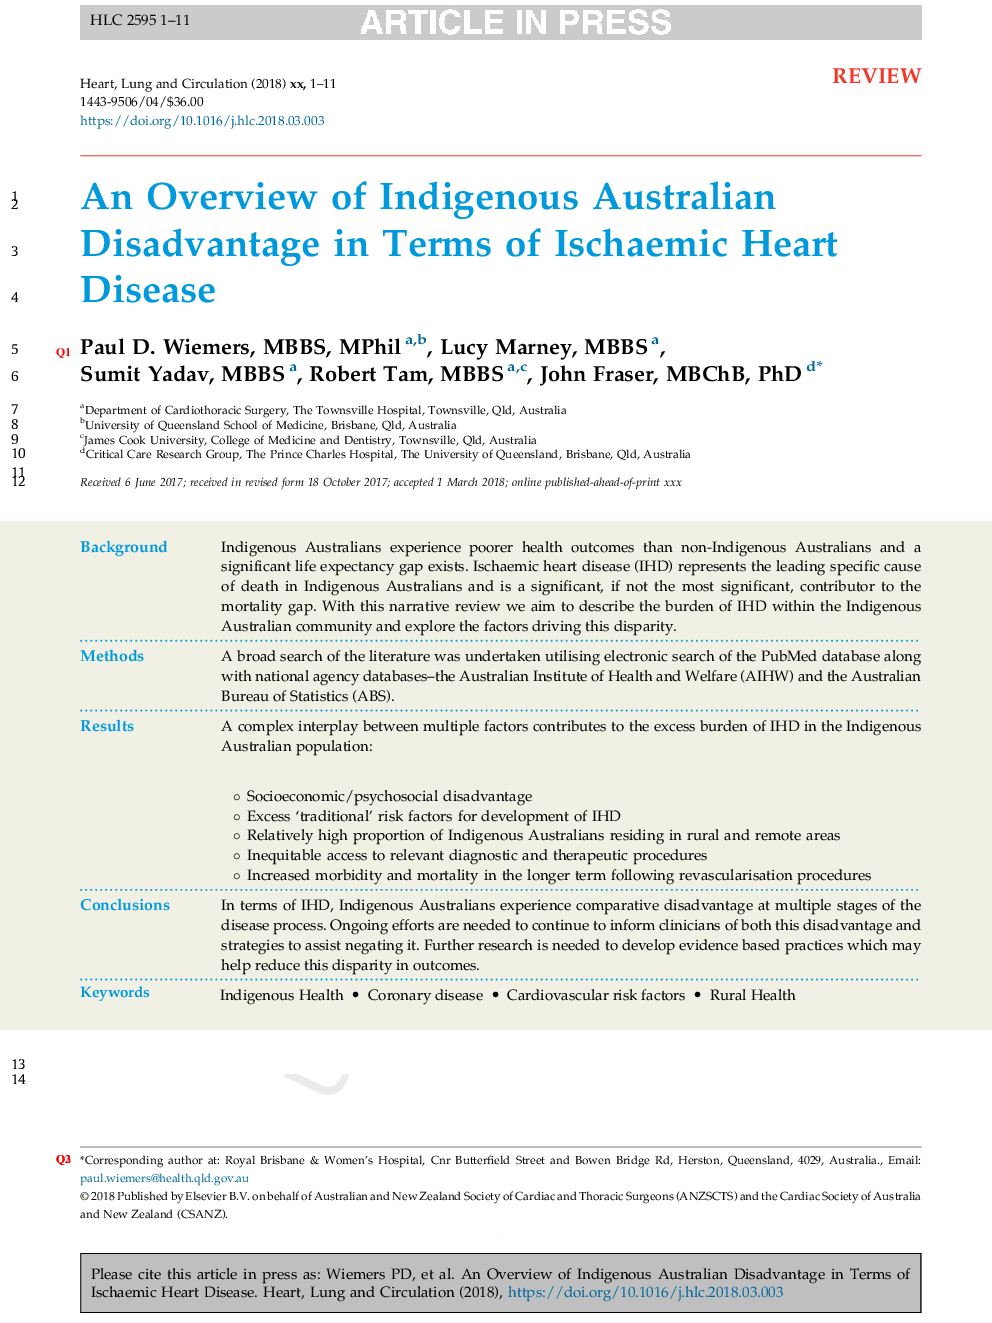 یک مرور کلی از معایب بومیان استرالیا در شرایط بیماری های قلبی ایسکمیک